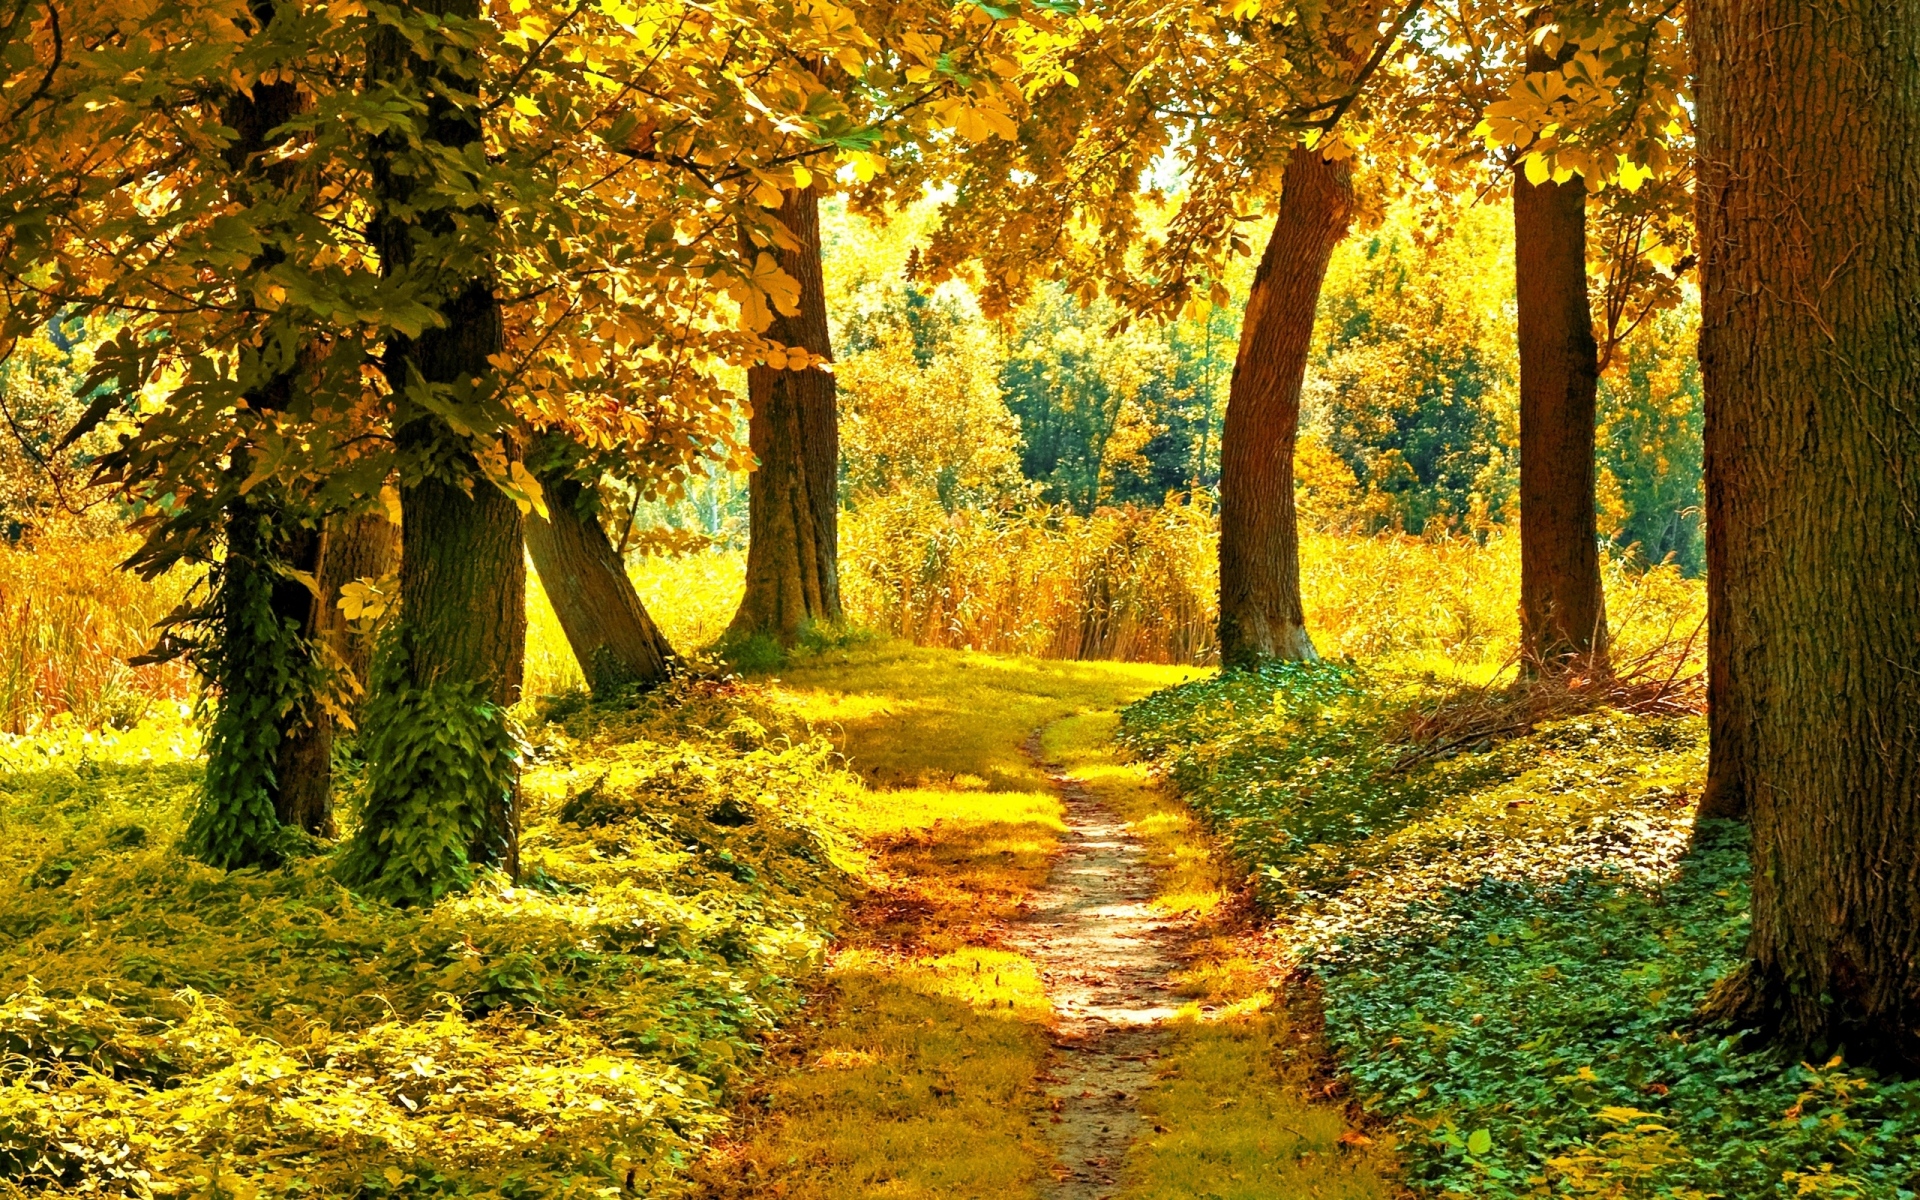 Картинки Трек, деревья, растительность, ранняя осень, сентябрь фото и обои на рабочий стол